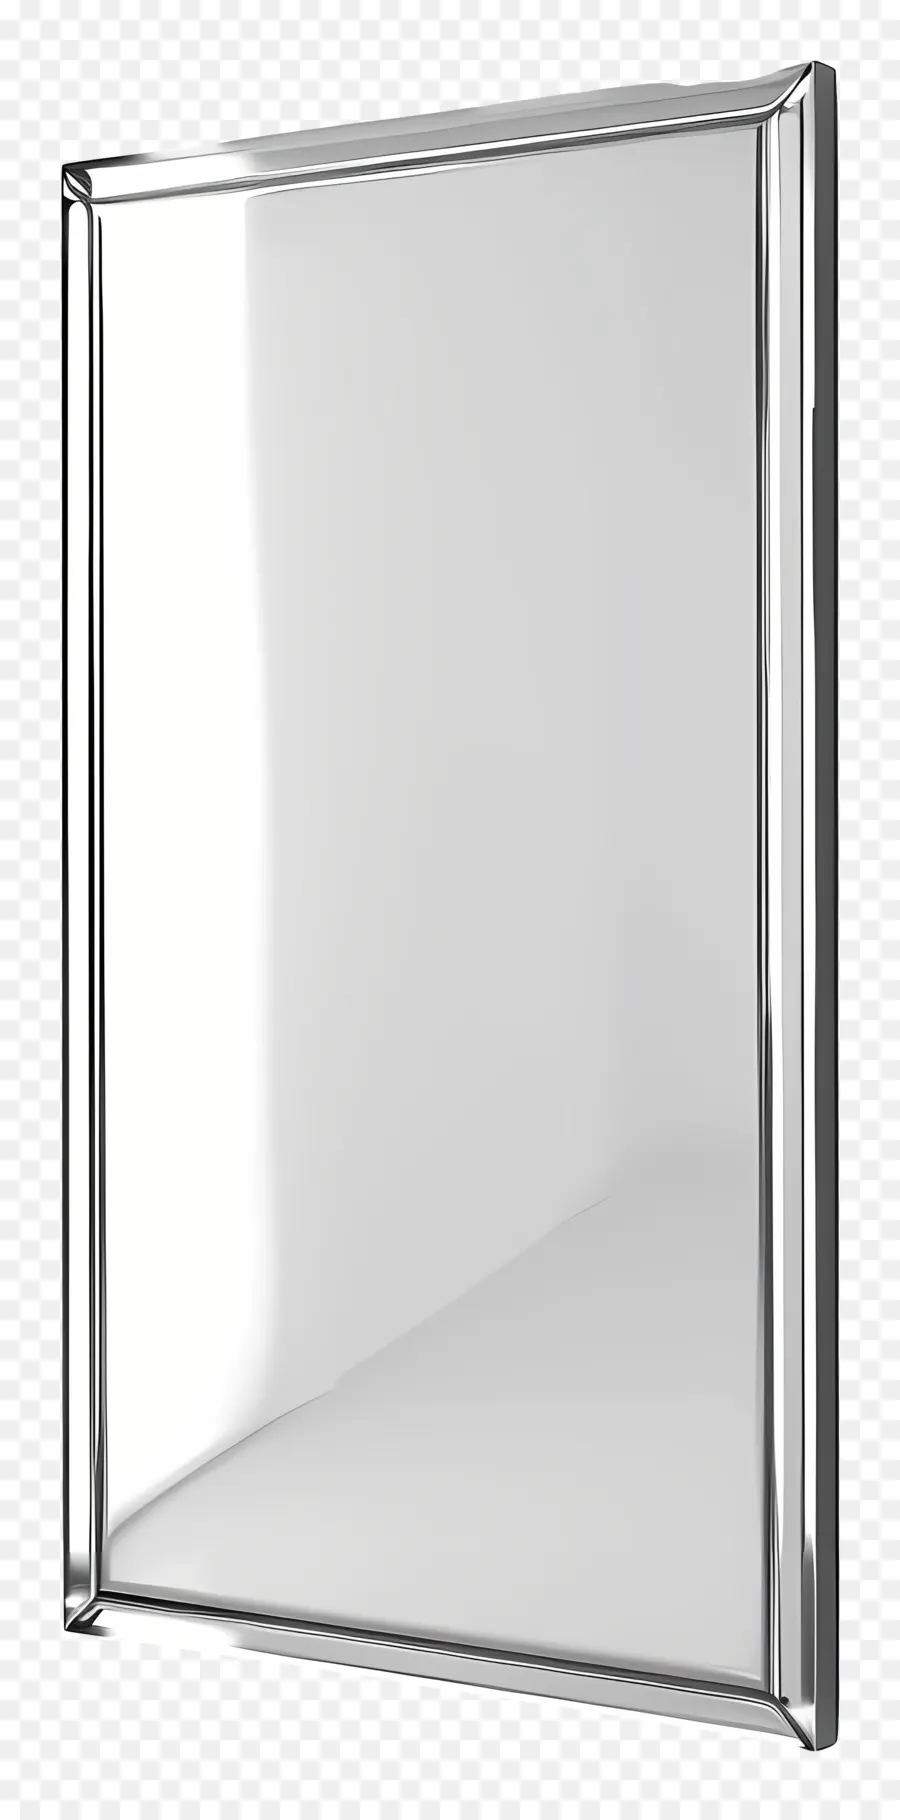 bordo bianco - Specchio metallico incorniciato nell'immagine riflettente bianca